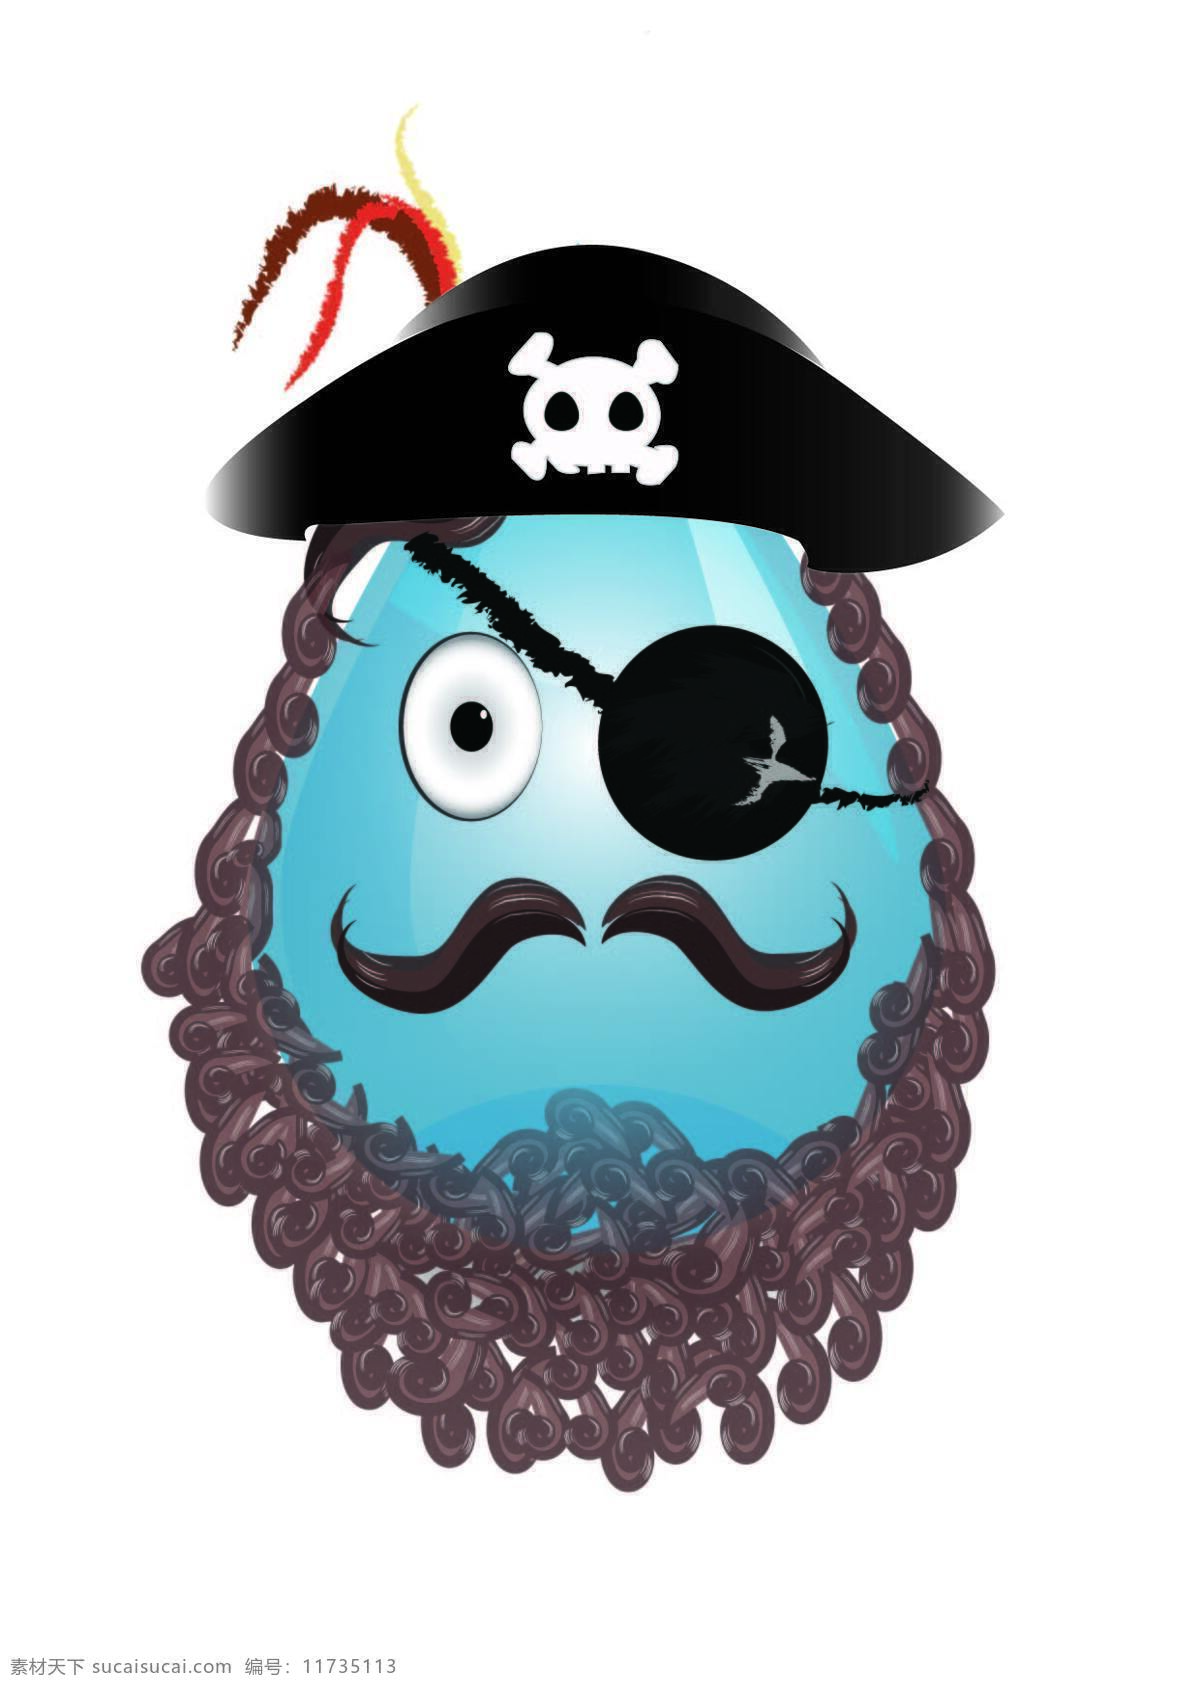 海盗 头像 动漫动画 动漫人物 胡子 水滴 眼罩 盗 设计素材 模板下载 海盗头像 psd源文件